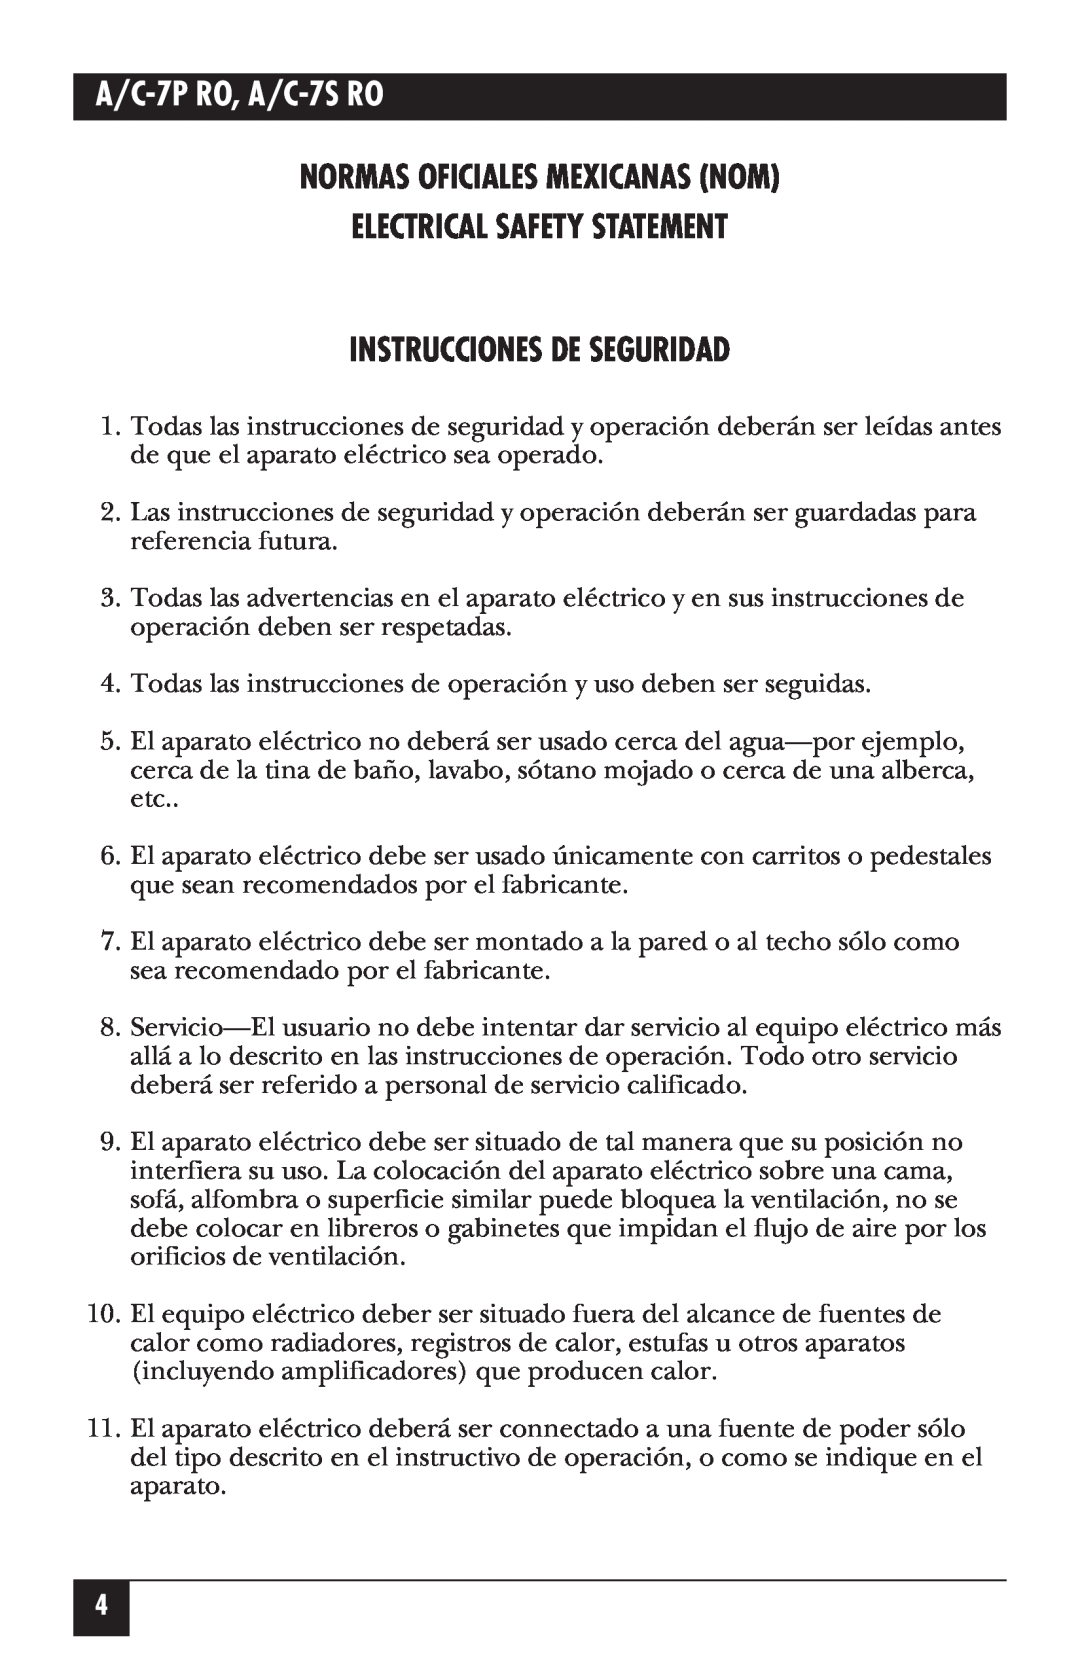 Black Box A/C-7P RO, A/C-7S RO manual Normas Oficiales Mexicanas Nom Electrical Safety Statement, Instrucciones De Seguridad 